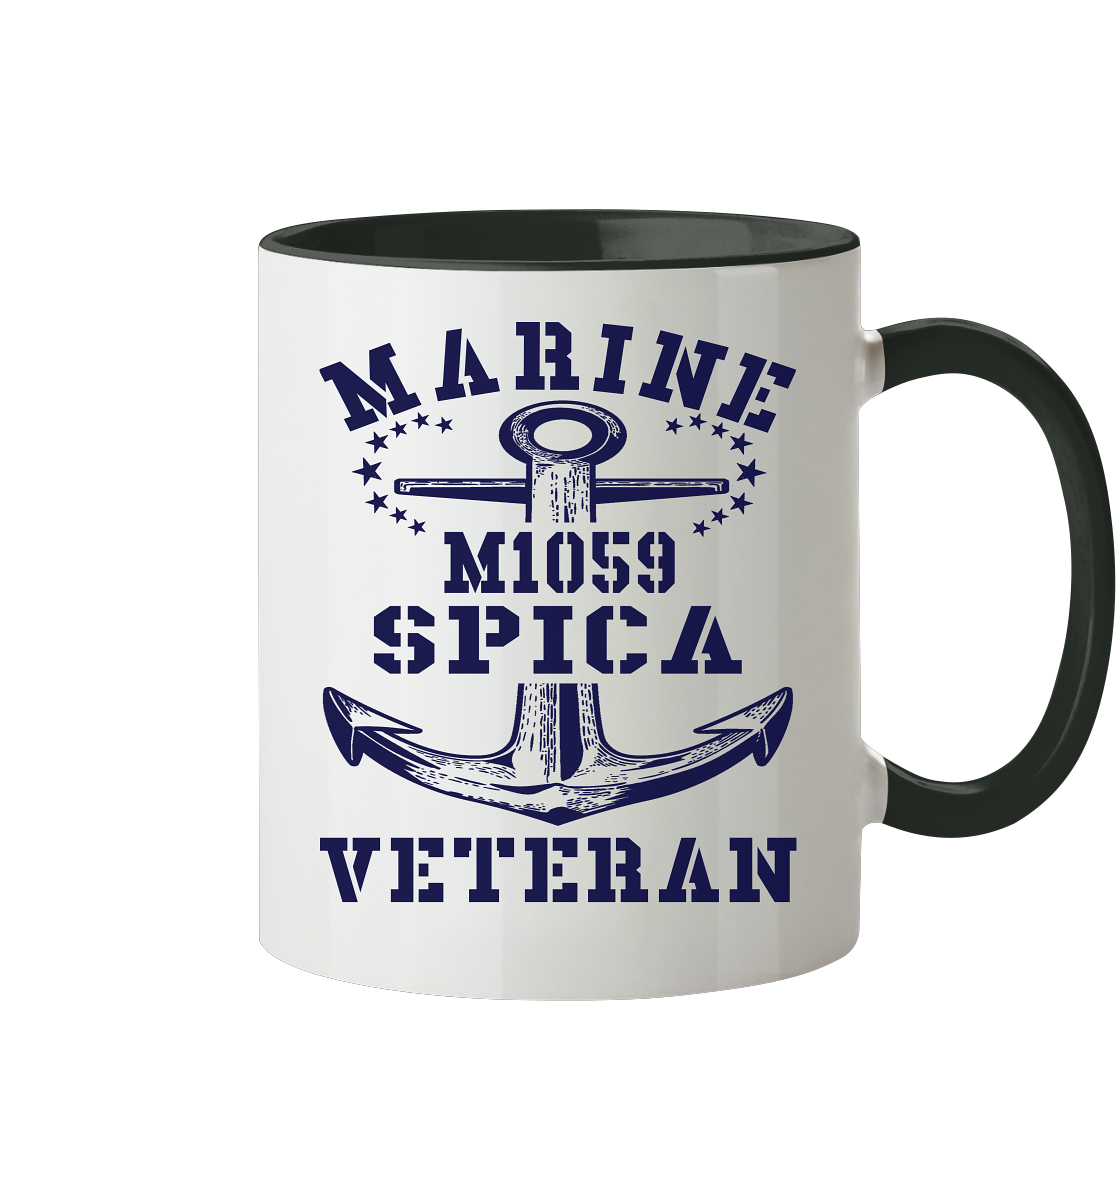 SM-Boot M1059 SPICA Marine Veteran - Tasse zweifarbig